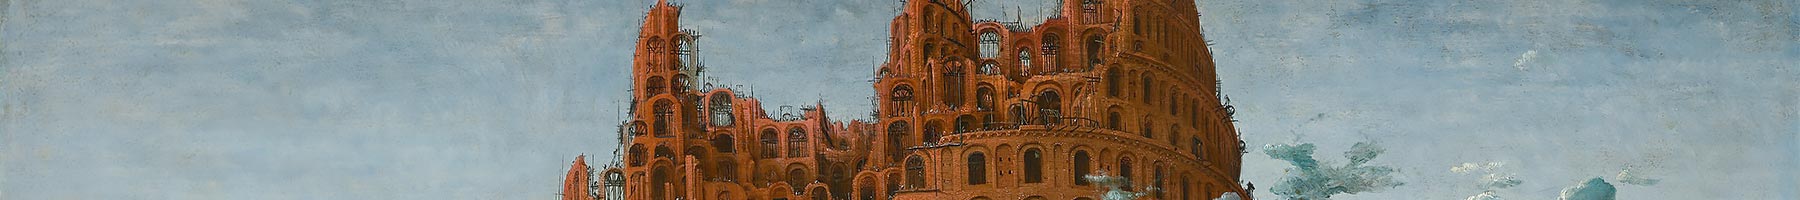 Pieter Bruegel The Elder The Tower of Babel